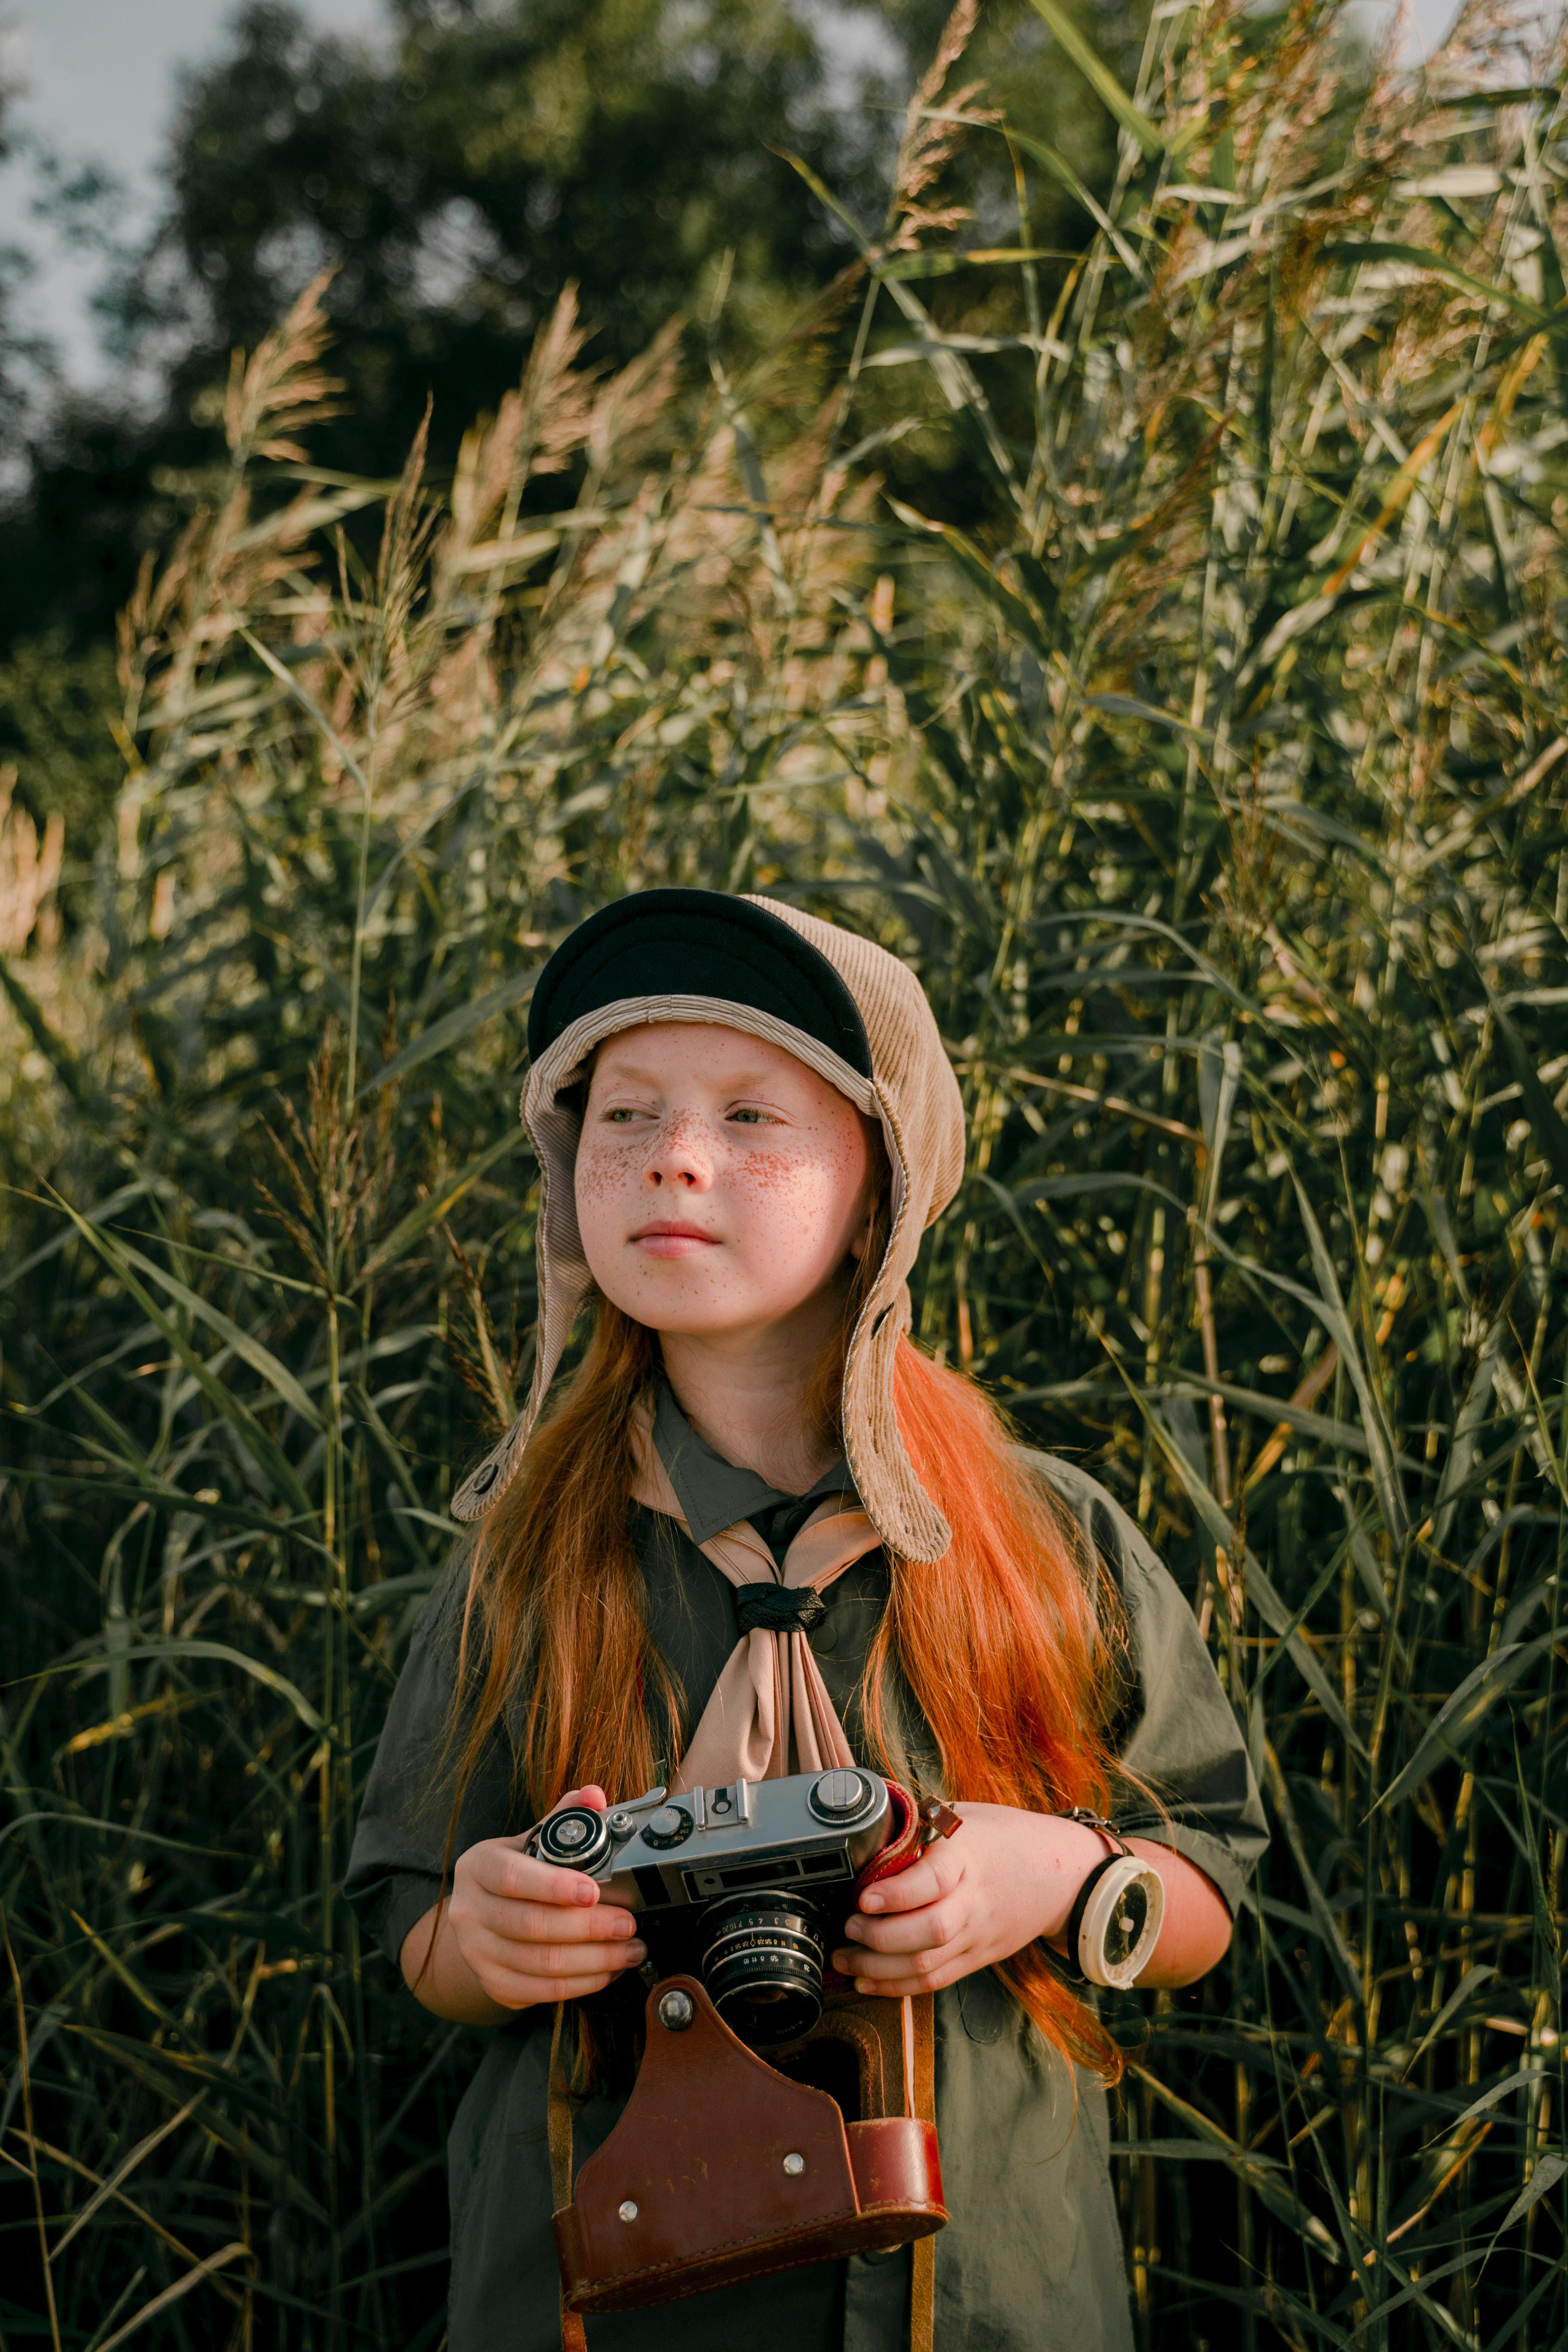 Nena fent una foto amb foulard. Font: Pexels - cottonbro studio